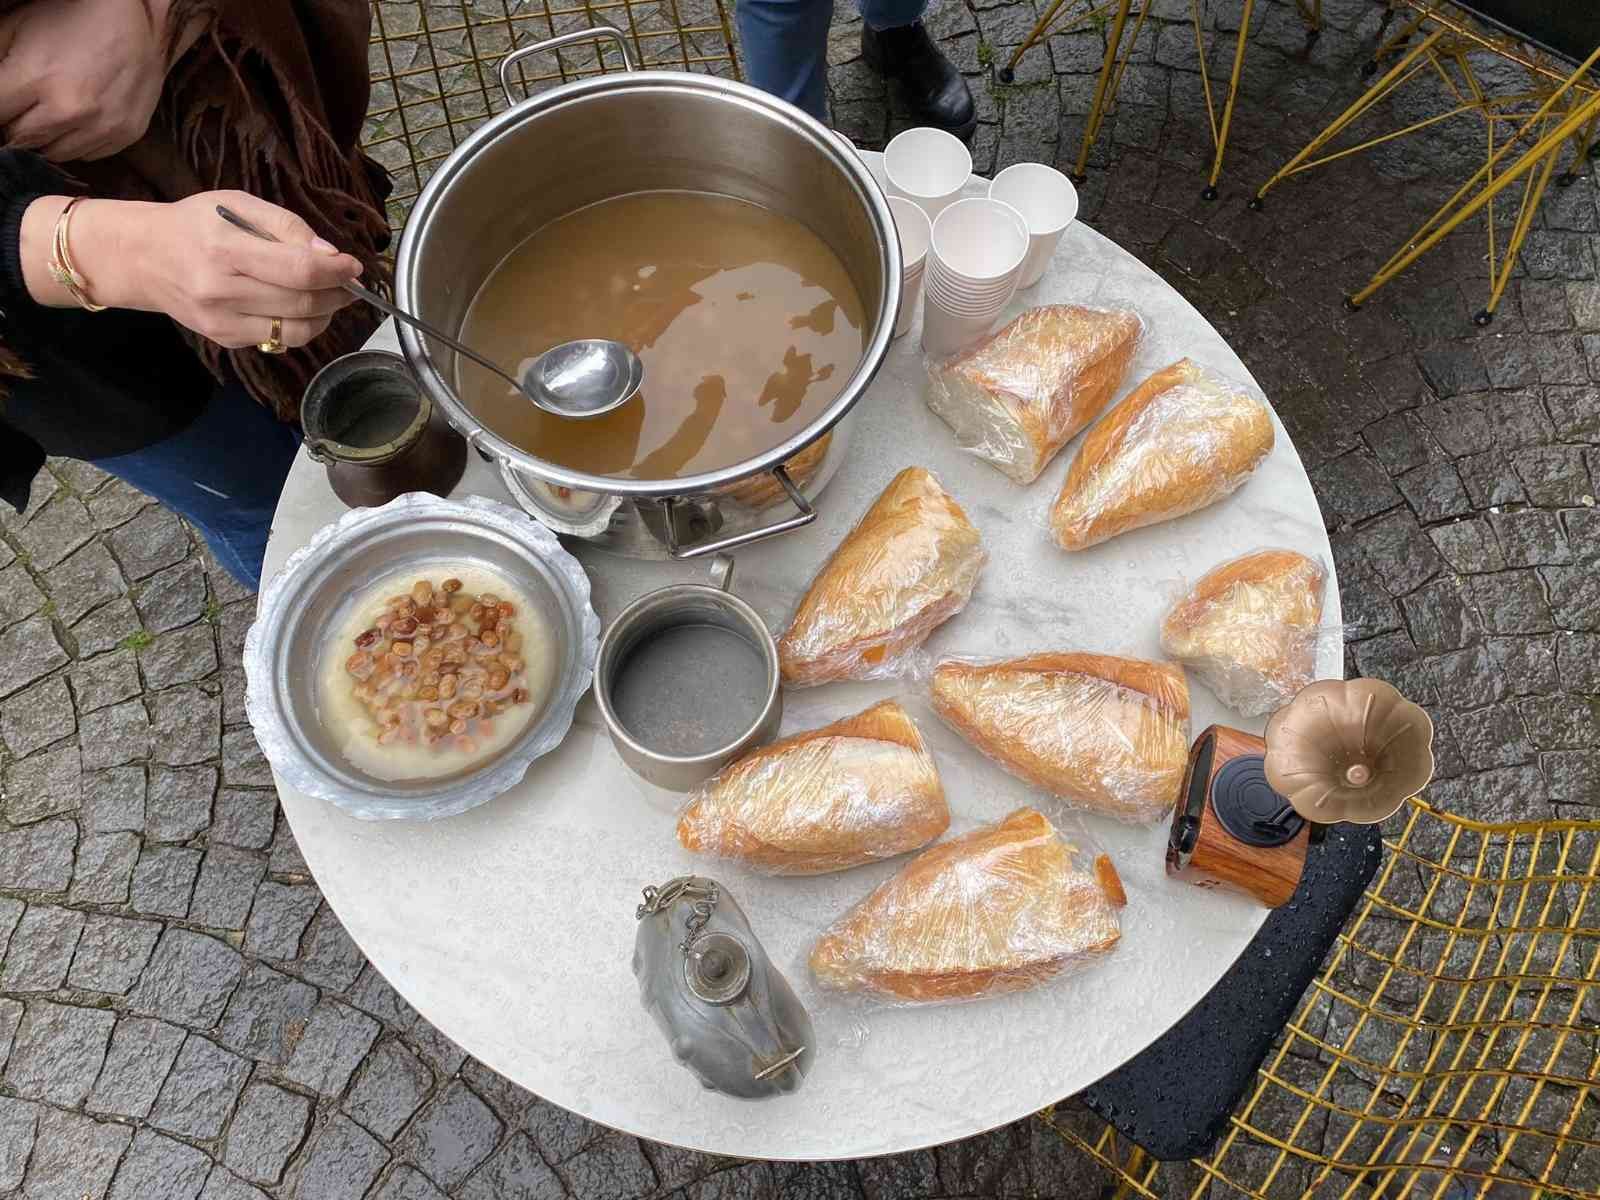 Üsküdar Kuzguncuk’ta bir kafe işletmecisi, 18 Mart Çanakkale Zaferi ve Şehitleri Anma Günü nedeniyle vatandaşlara hoşaf ve ekmek dağıttı. Üsküdar ...